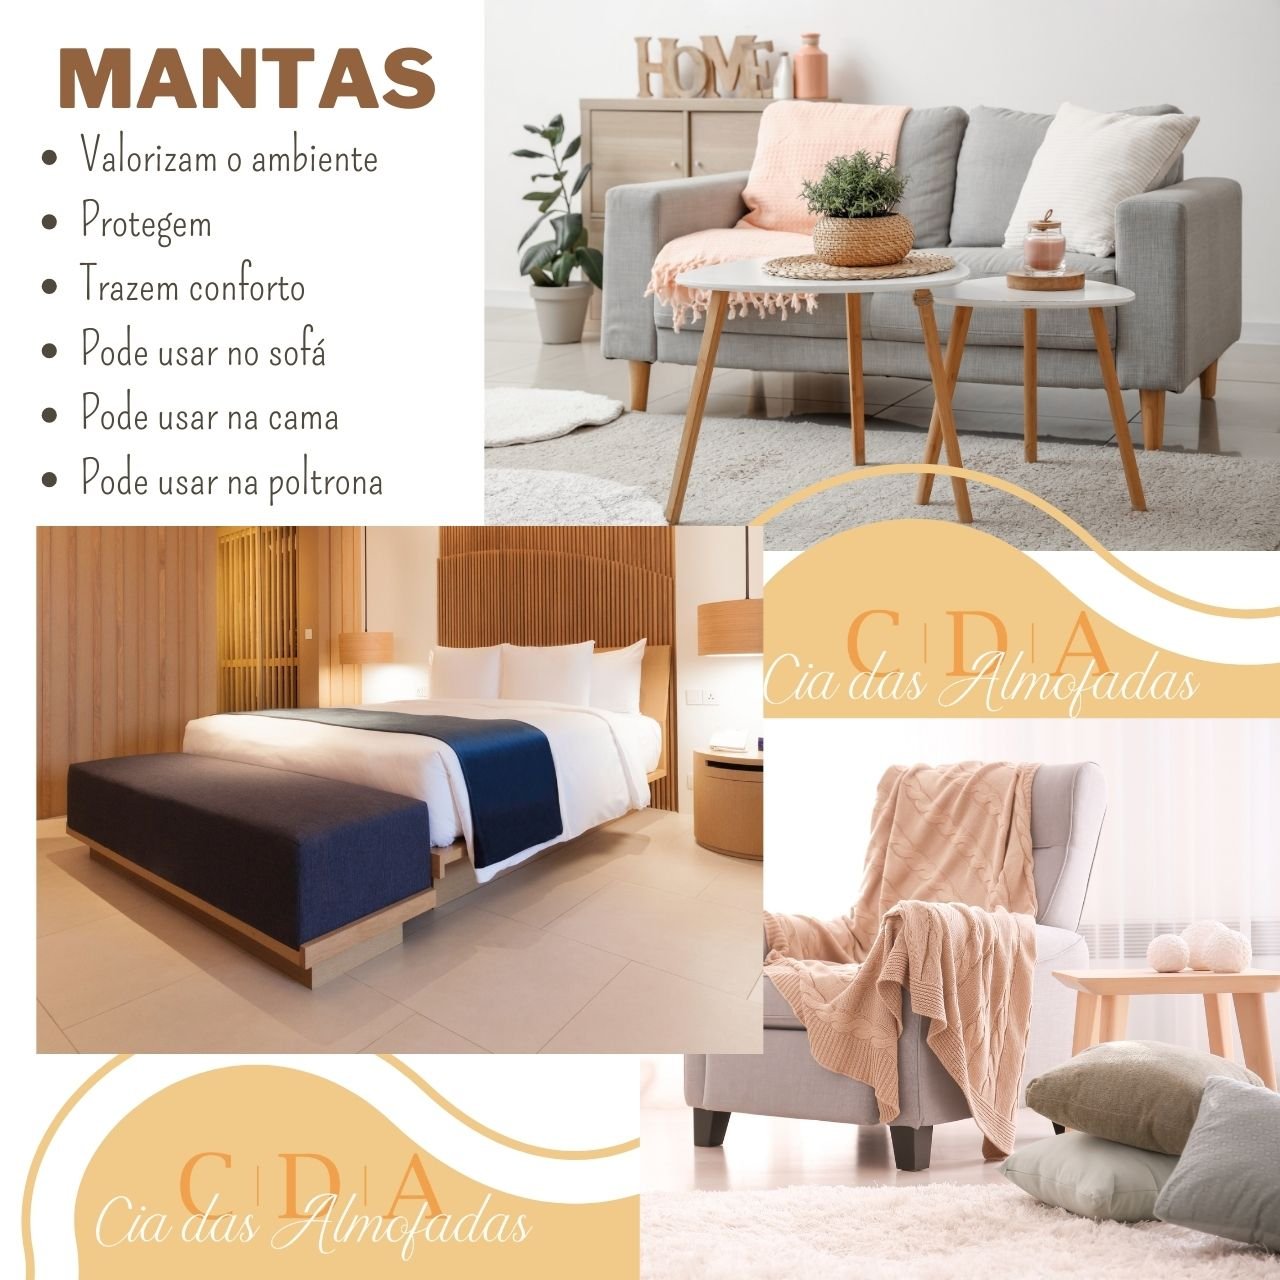 Manta Sofa Peseira Algodao Grande Diversas Cores 2.50x1.50m - Bege - 3